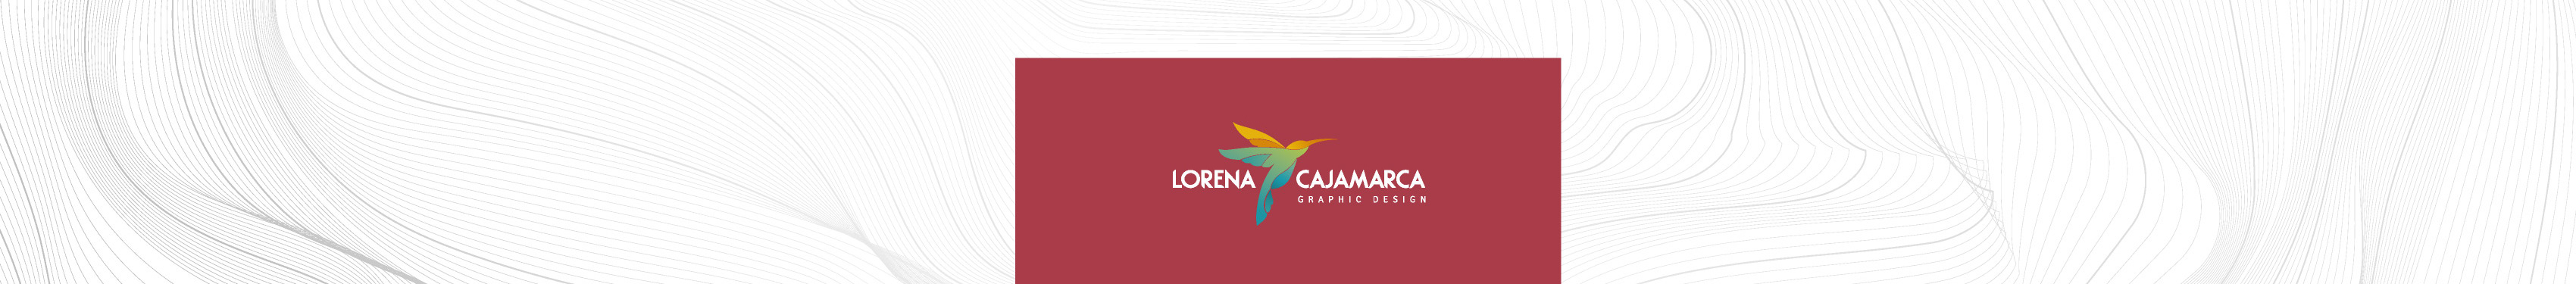 Lorena Cajamarca D のプロファイルバナー